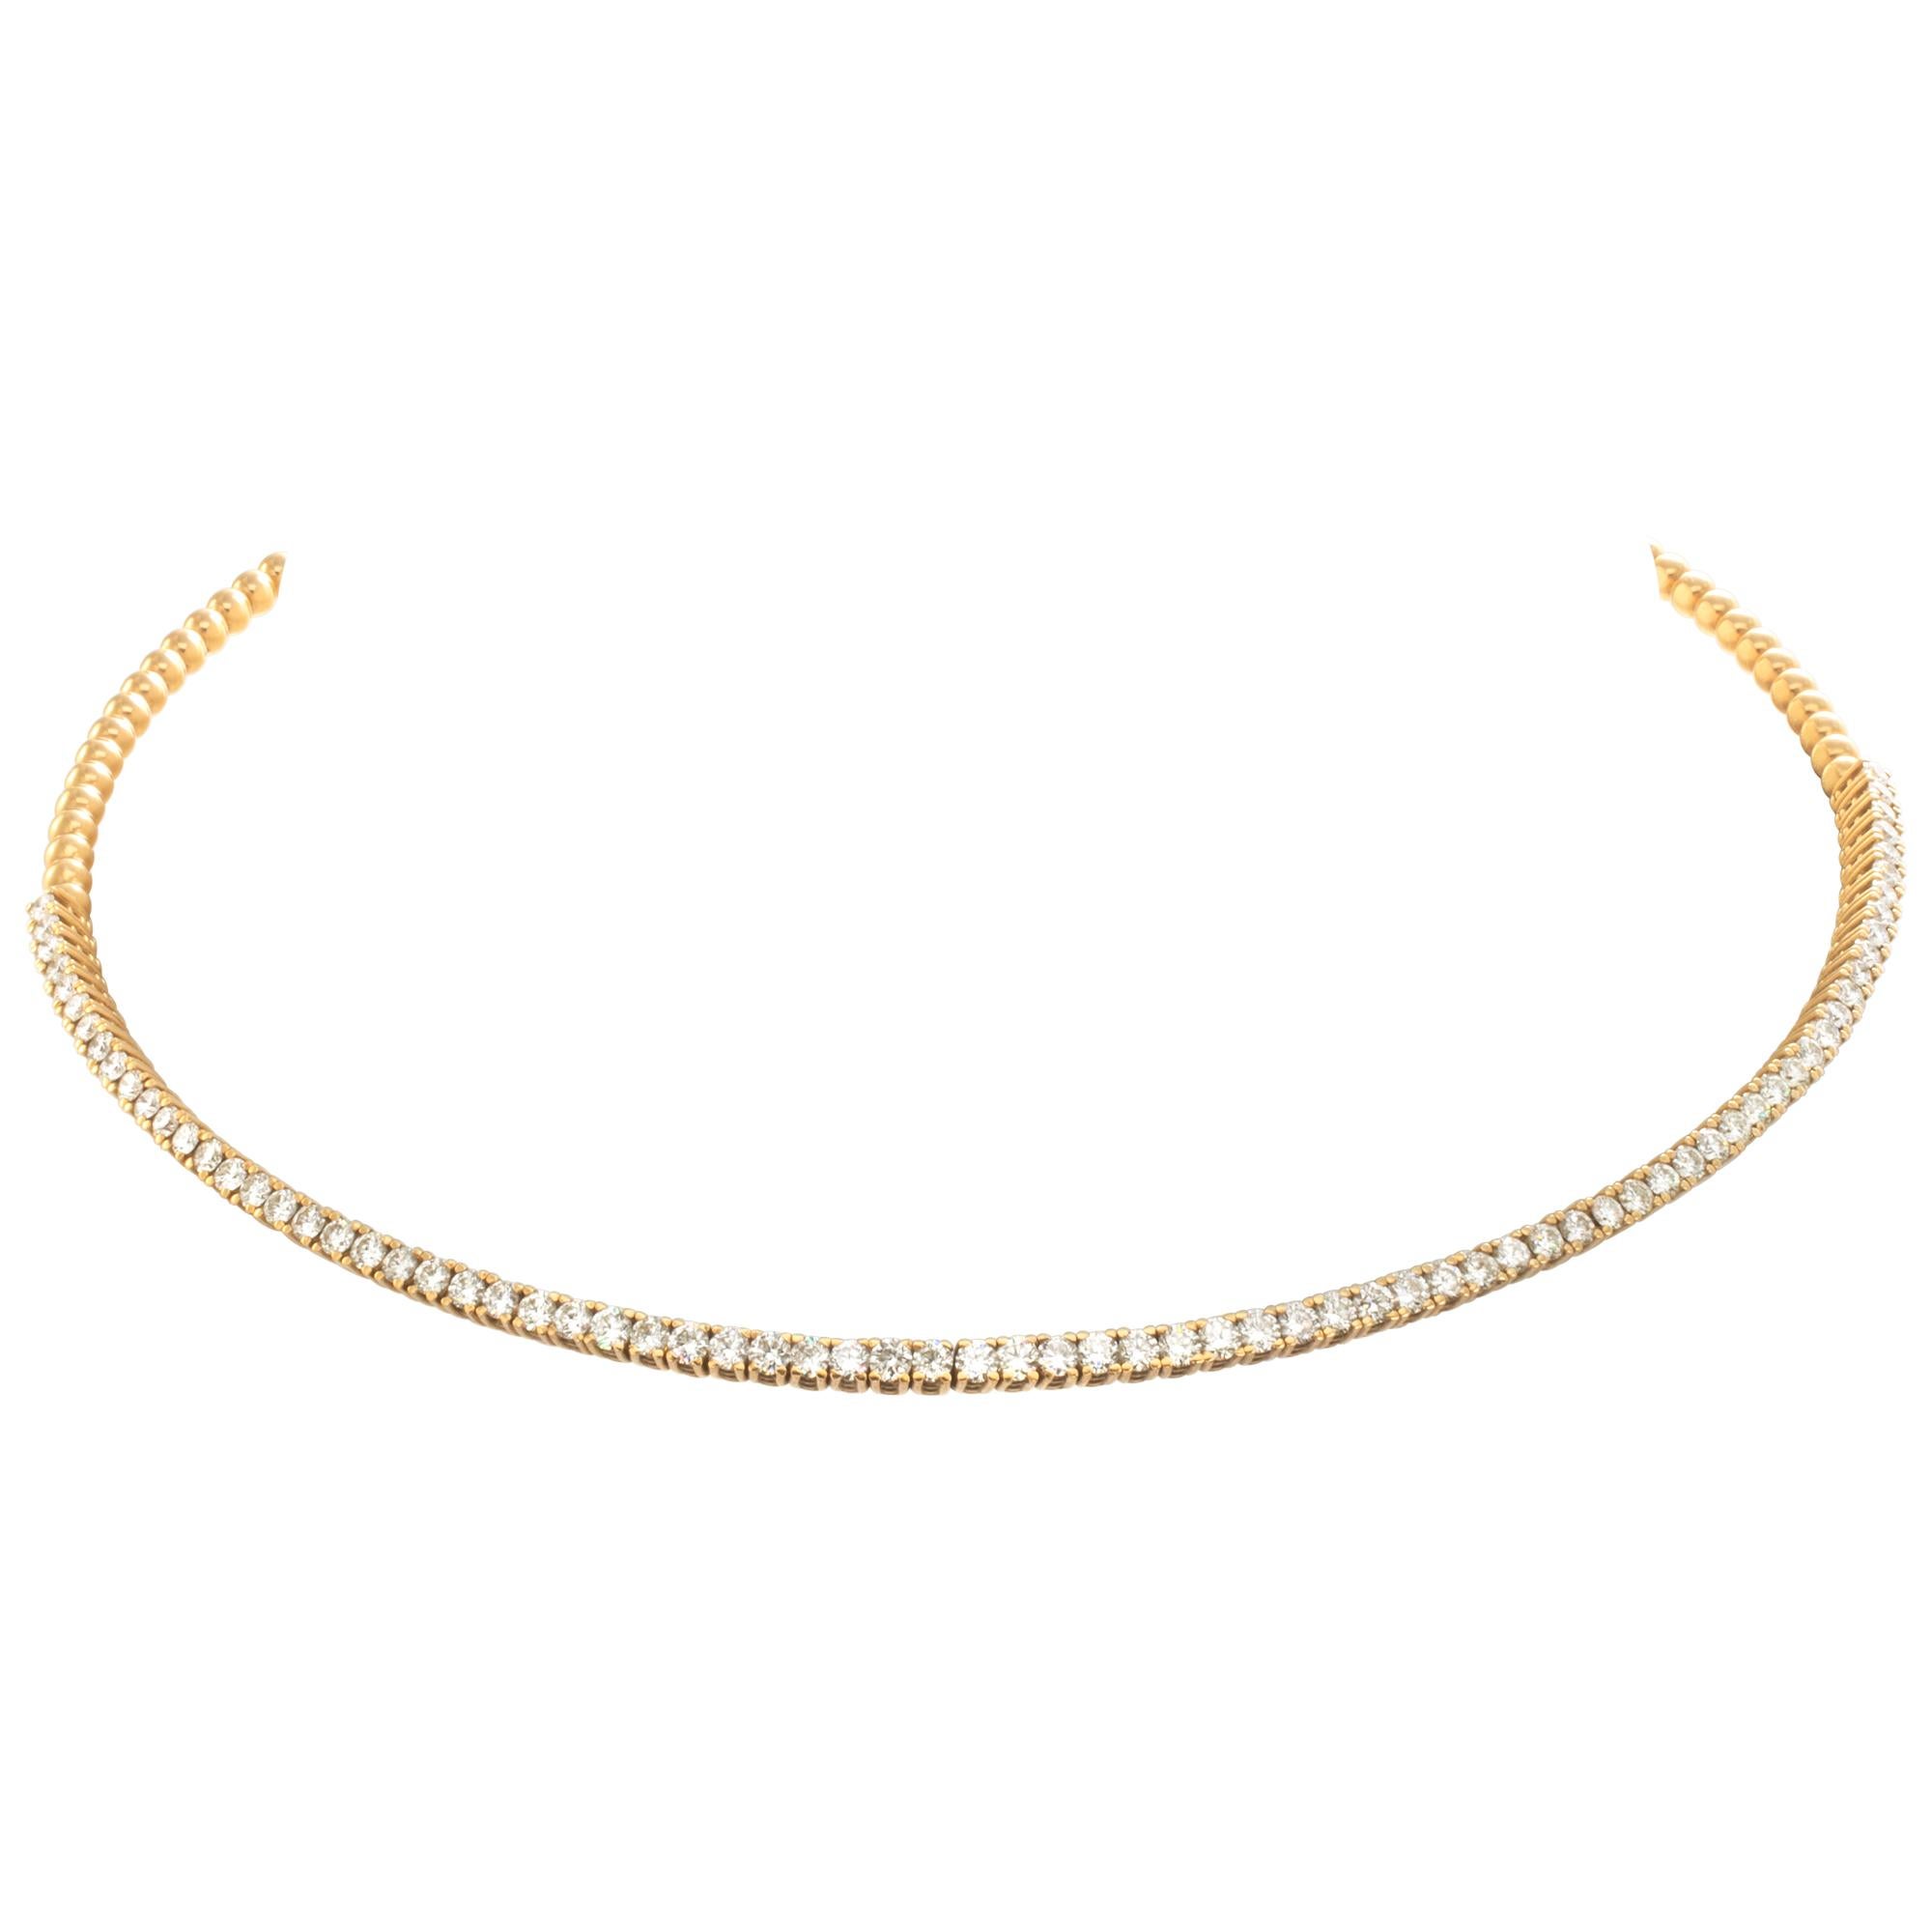 Diamond 18k yellow gold choker necklace